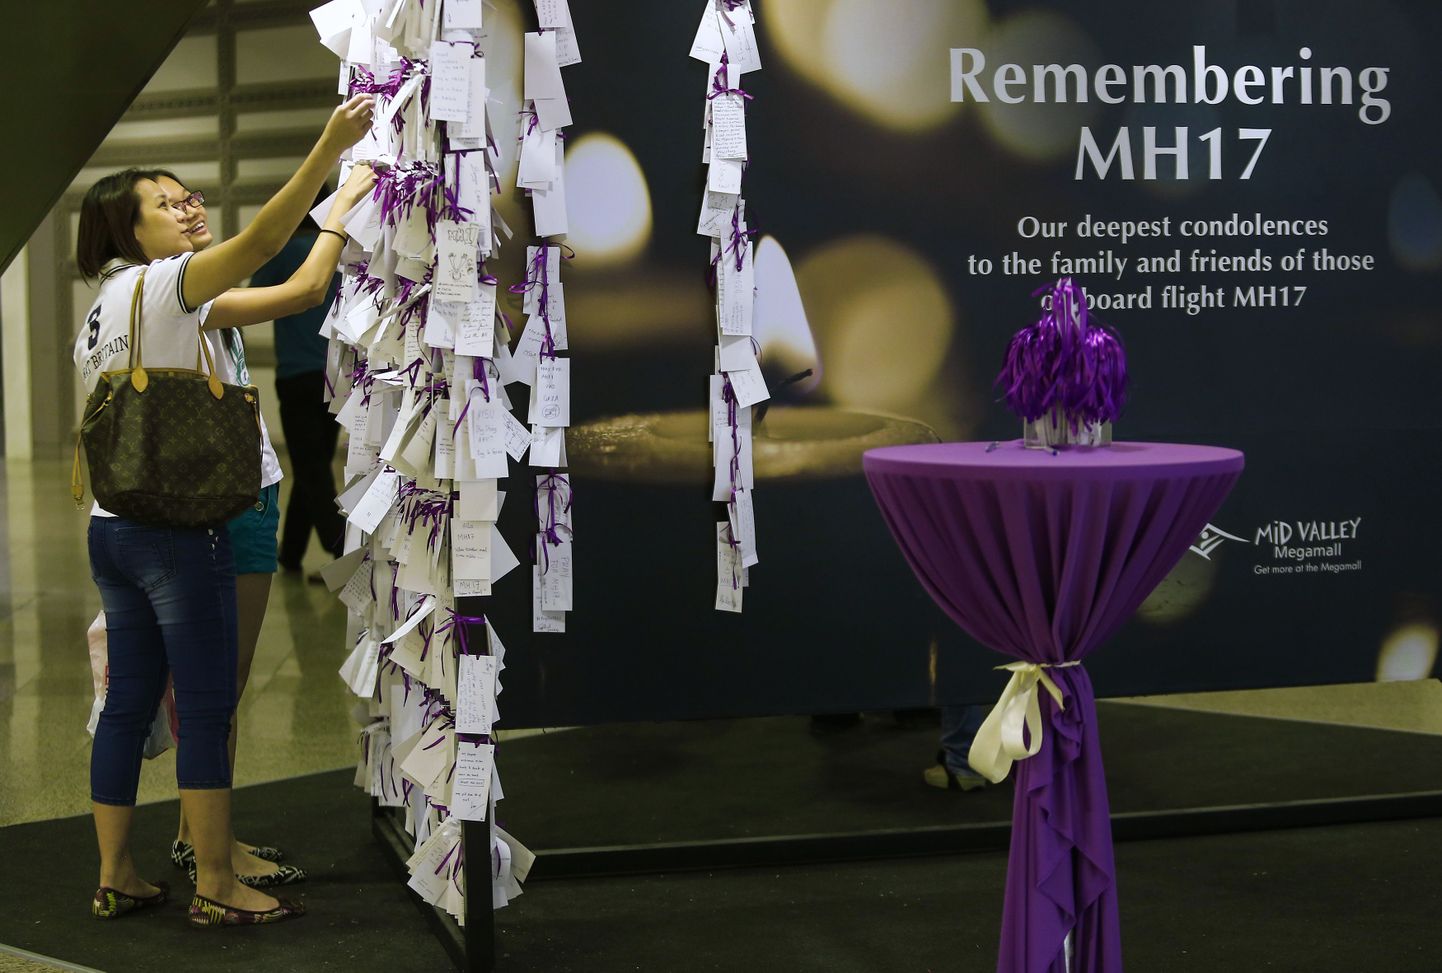 Malaysia Airlinesi õnnetuses hukkunute mälestamine